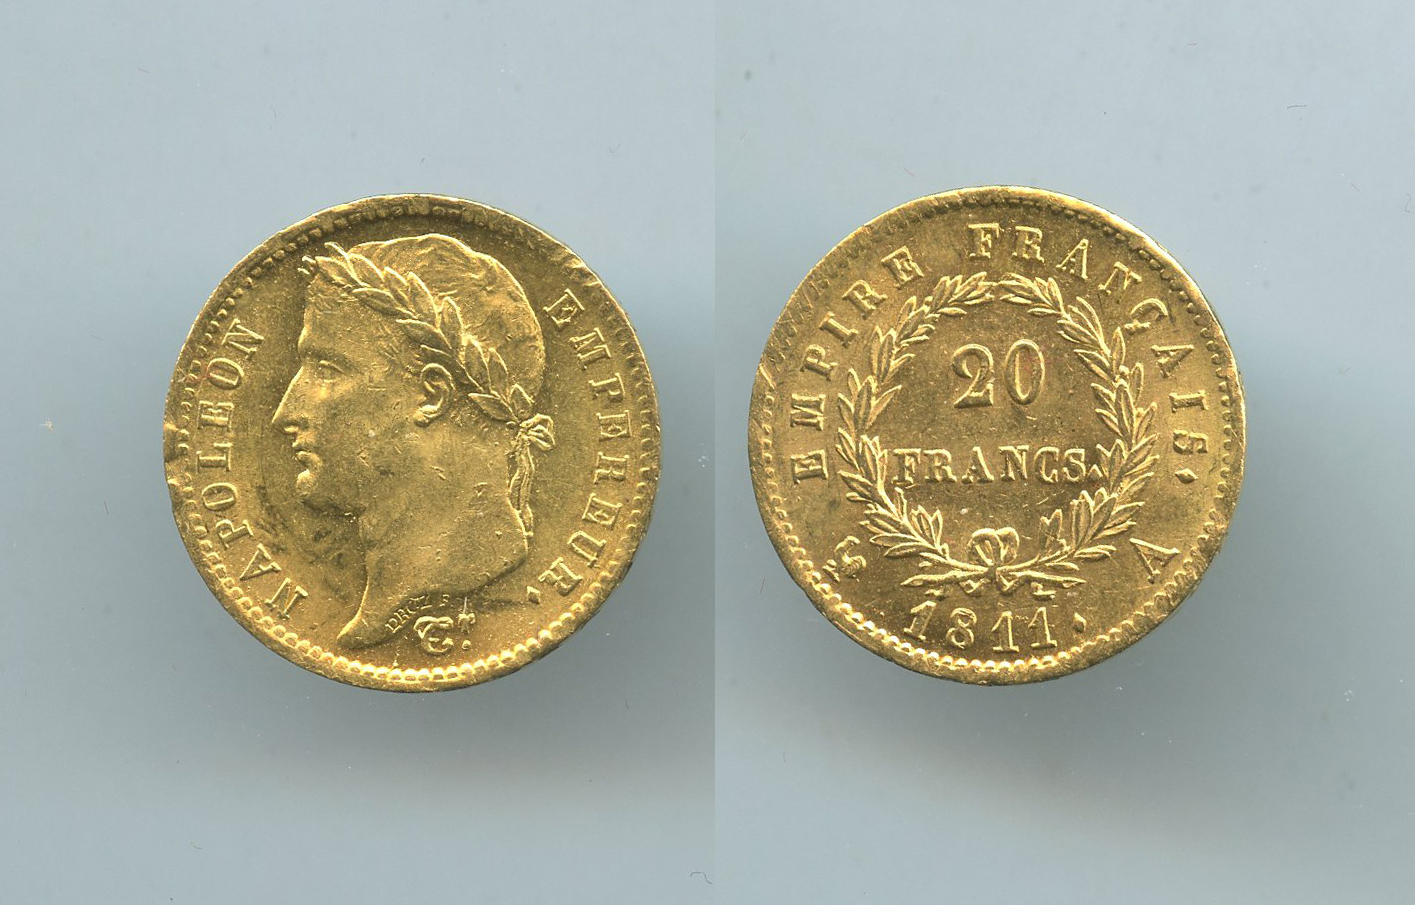 FRANCIA, Napoleone (1804-1814) 20 Francs 1811 A, ERRORE Legenda "EU PROTEGE LA FRANCE"